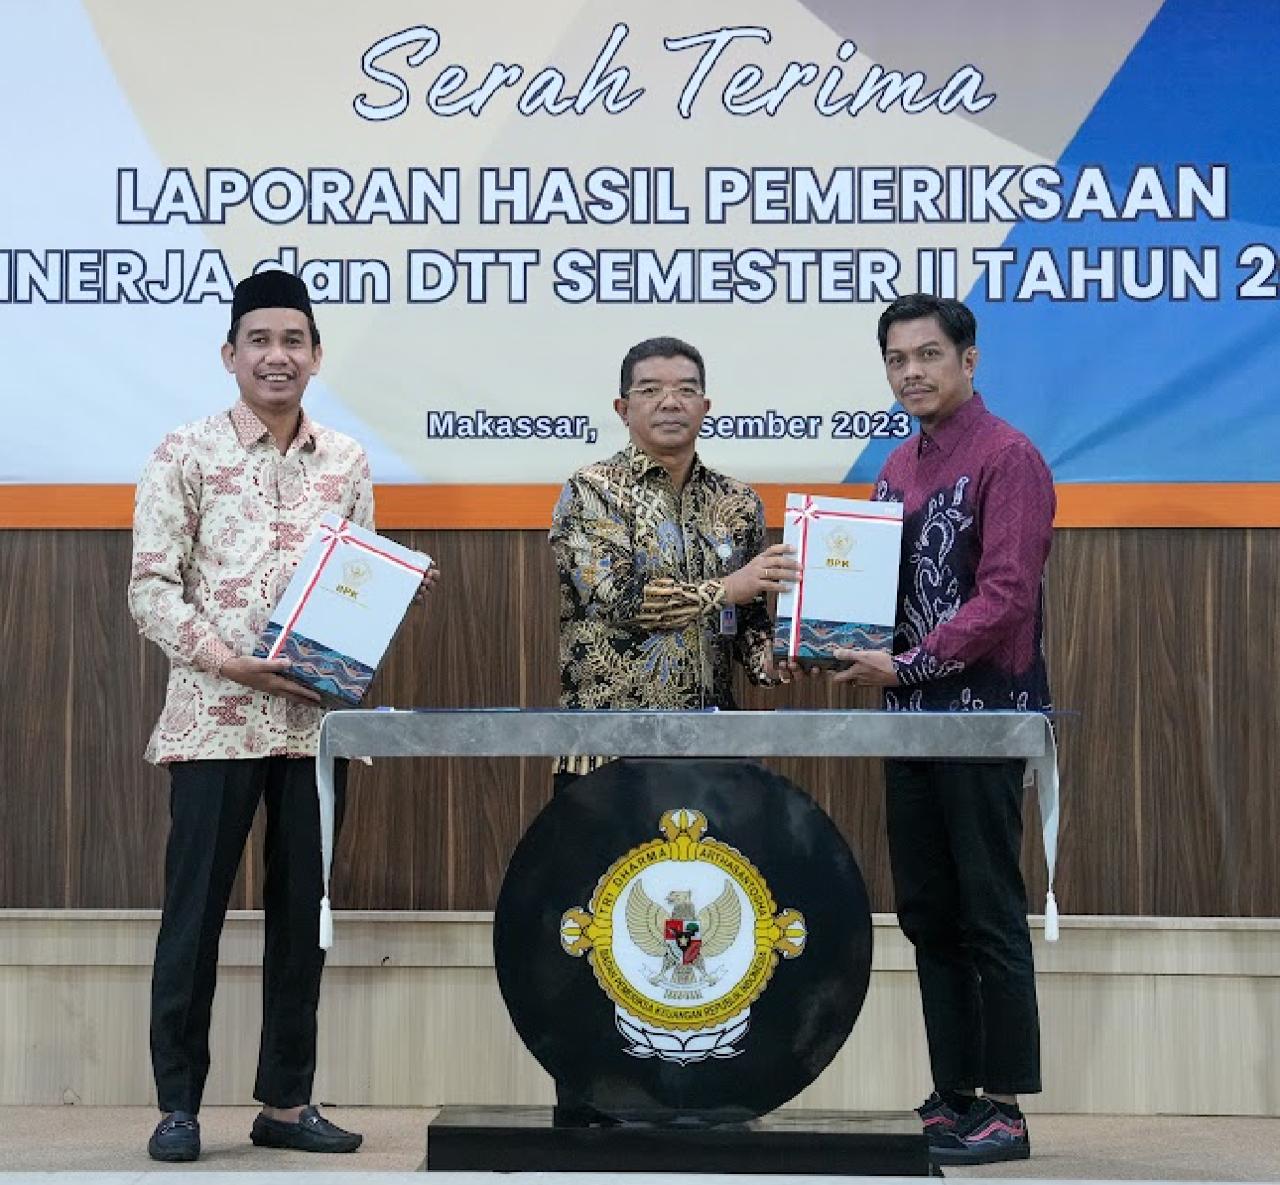 PJ Sekda Makassar Terima LHPK dari BPK RI Sulsel Untuk Semester II Tahun 2023